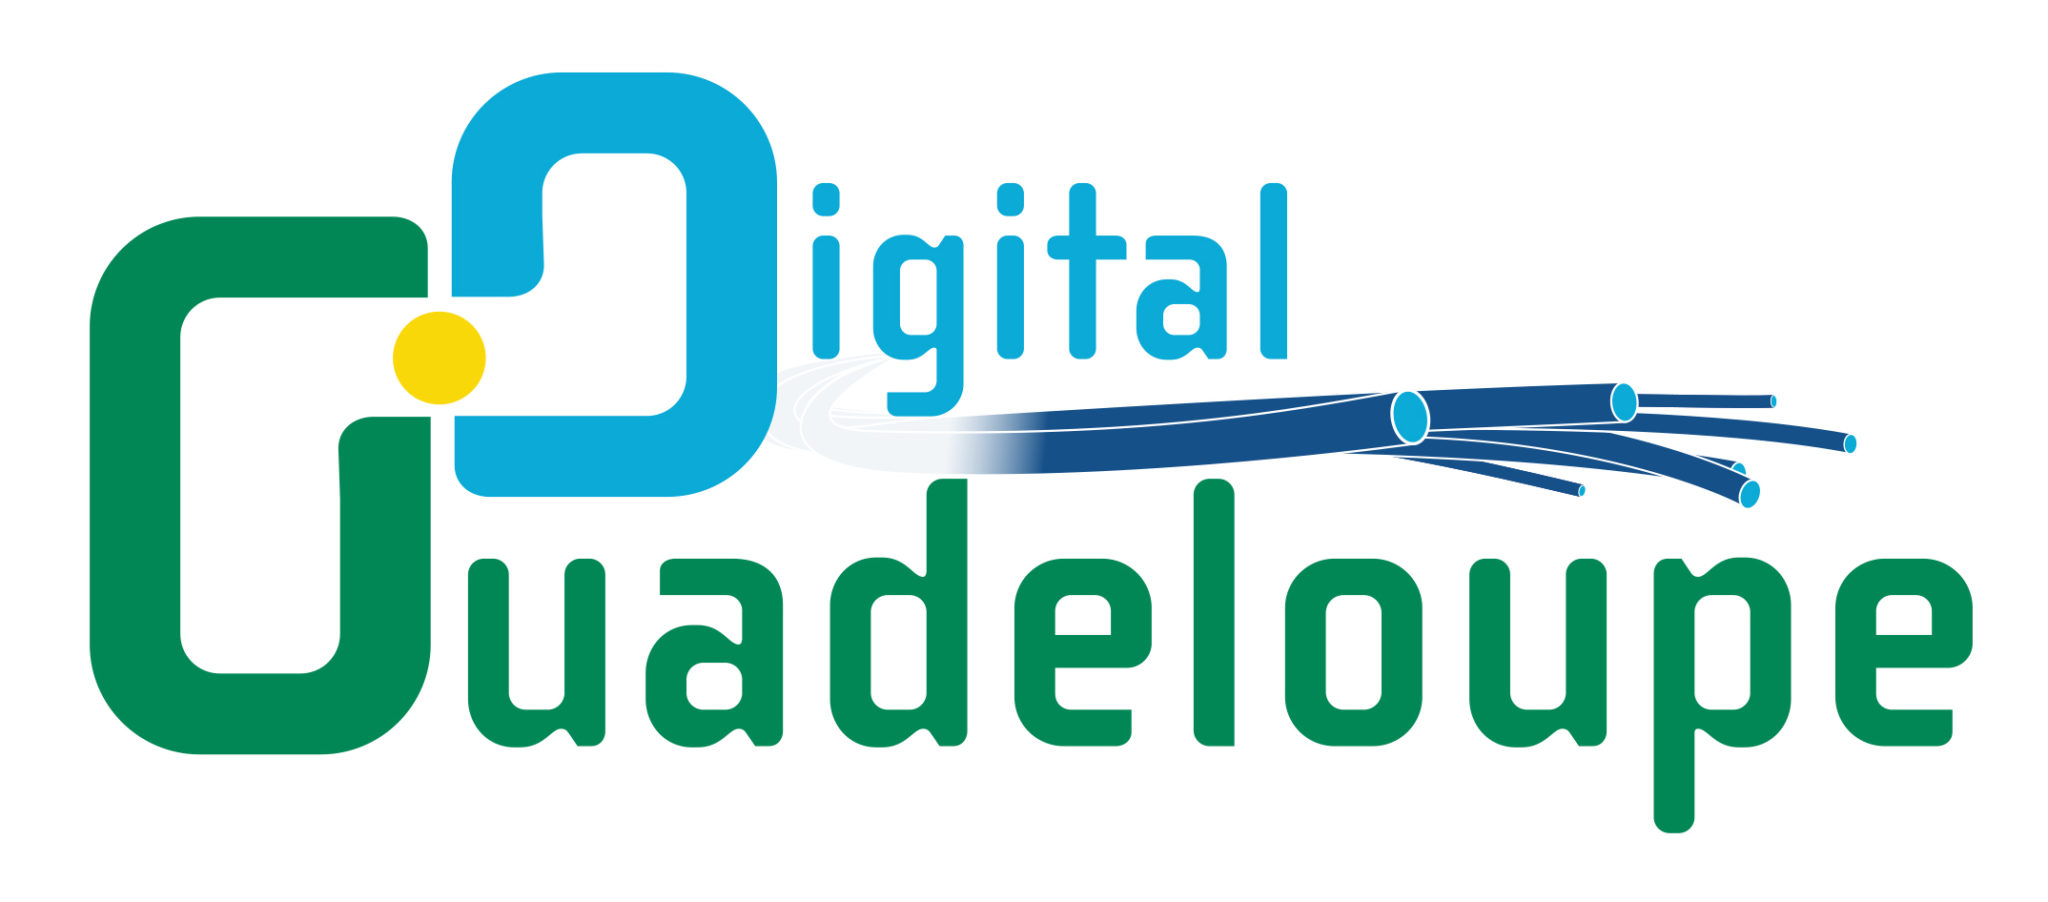 Guadeloupe Digital